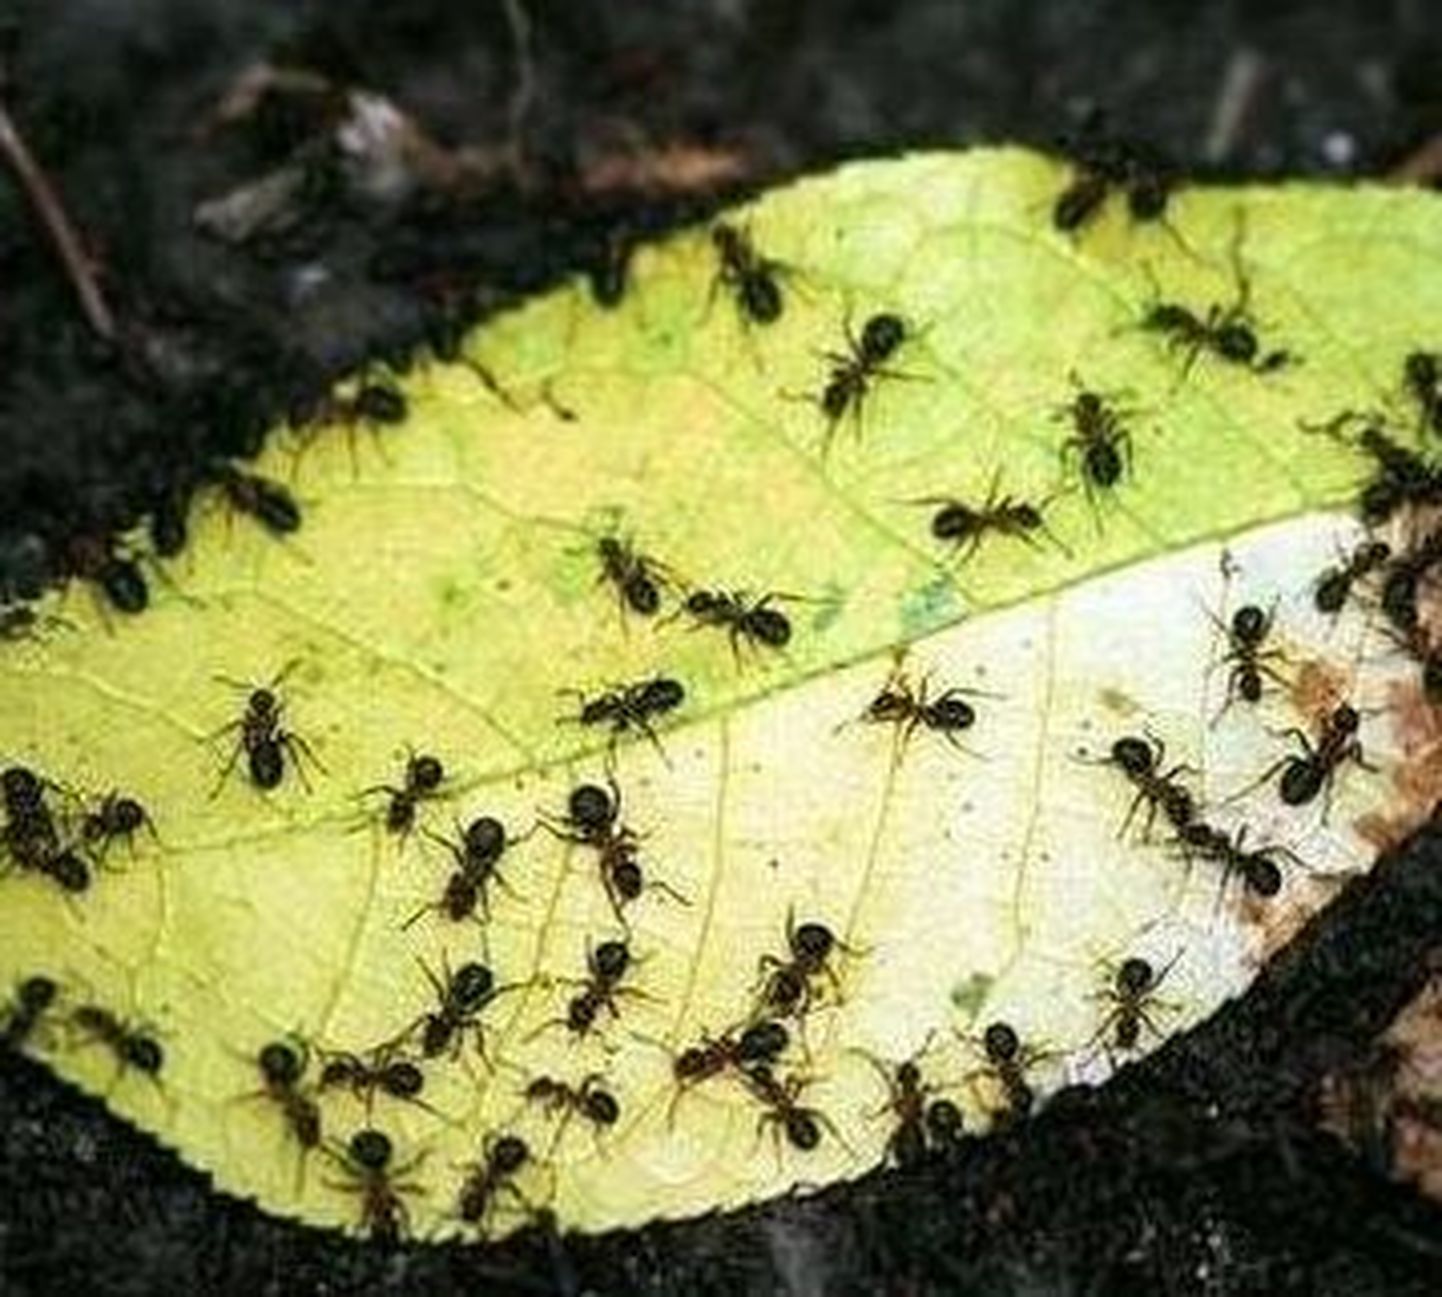 Amazonase sipelgad paljunevad kloonimise teel